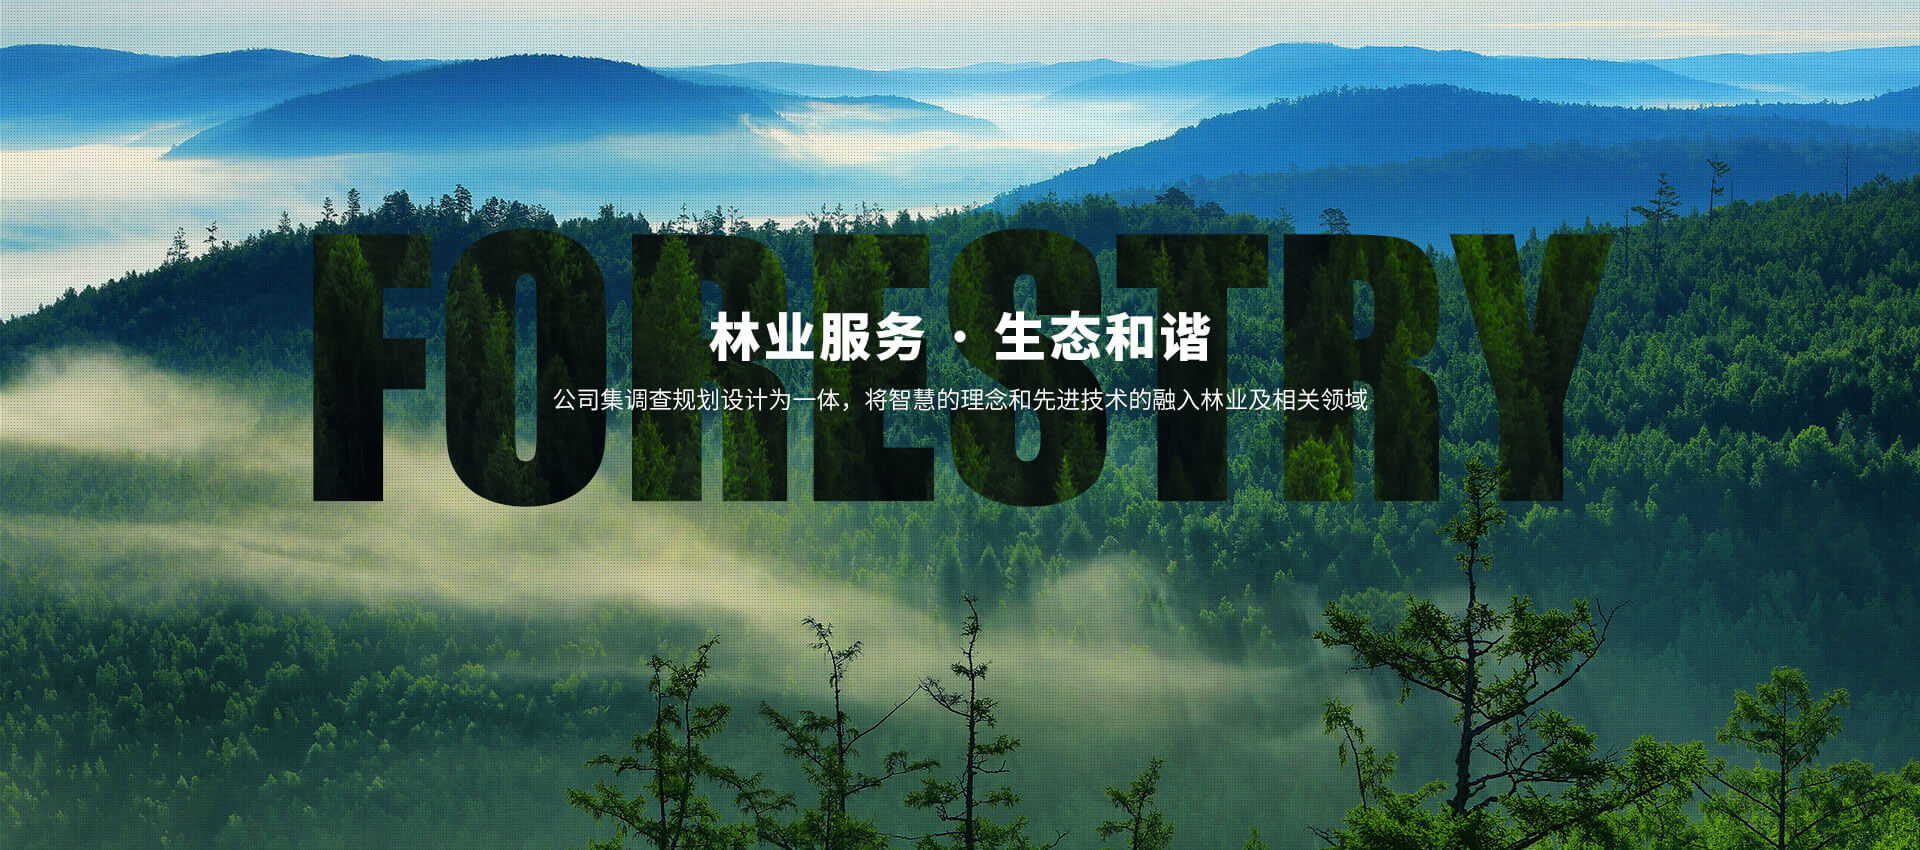 河南j9九游真人客户端林业技术服务有限公司